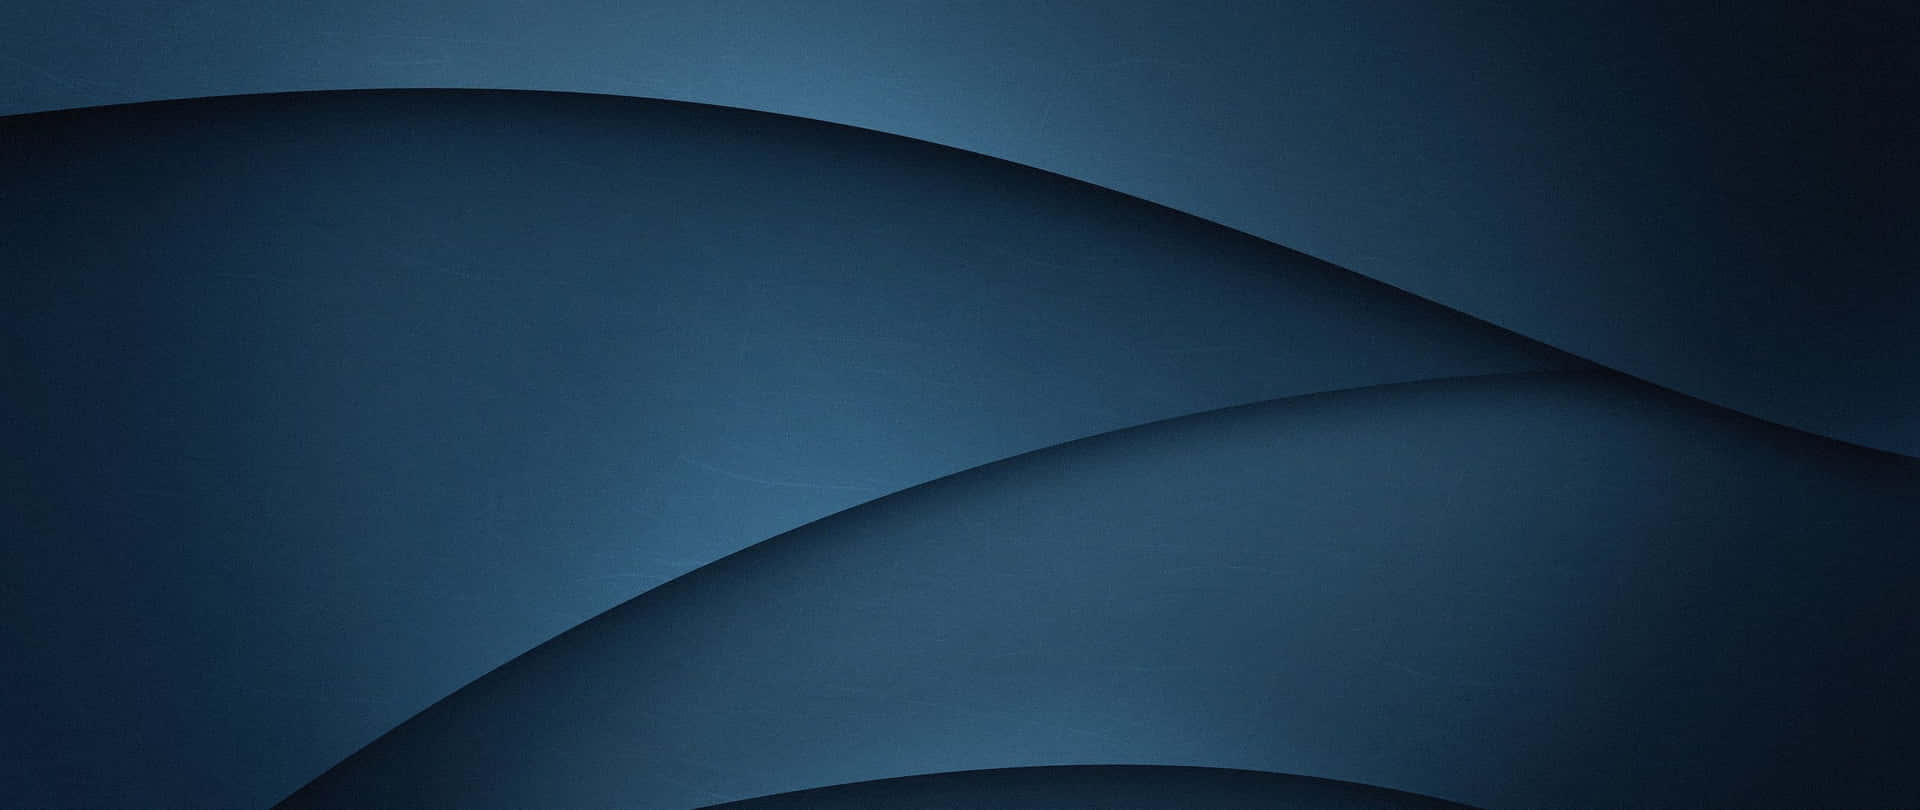 Fascinerandemörkblå Gradient Med Vågiga Linjer. Wallpaper